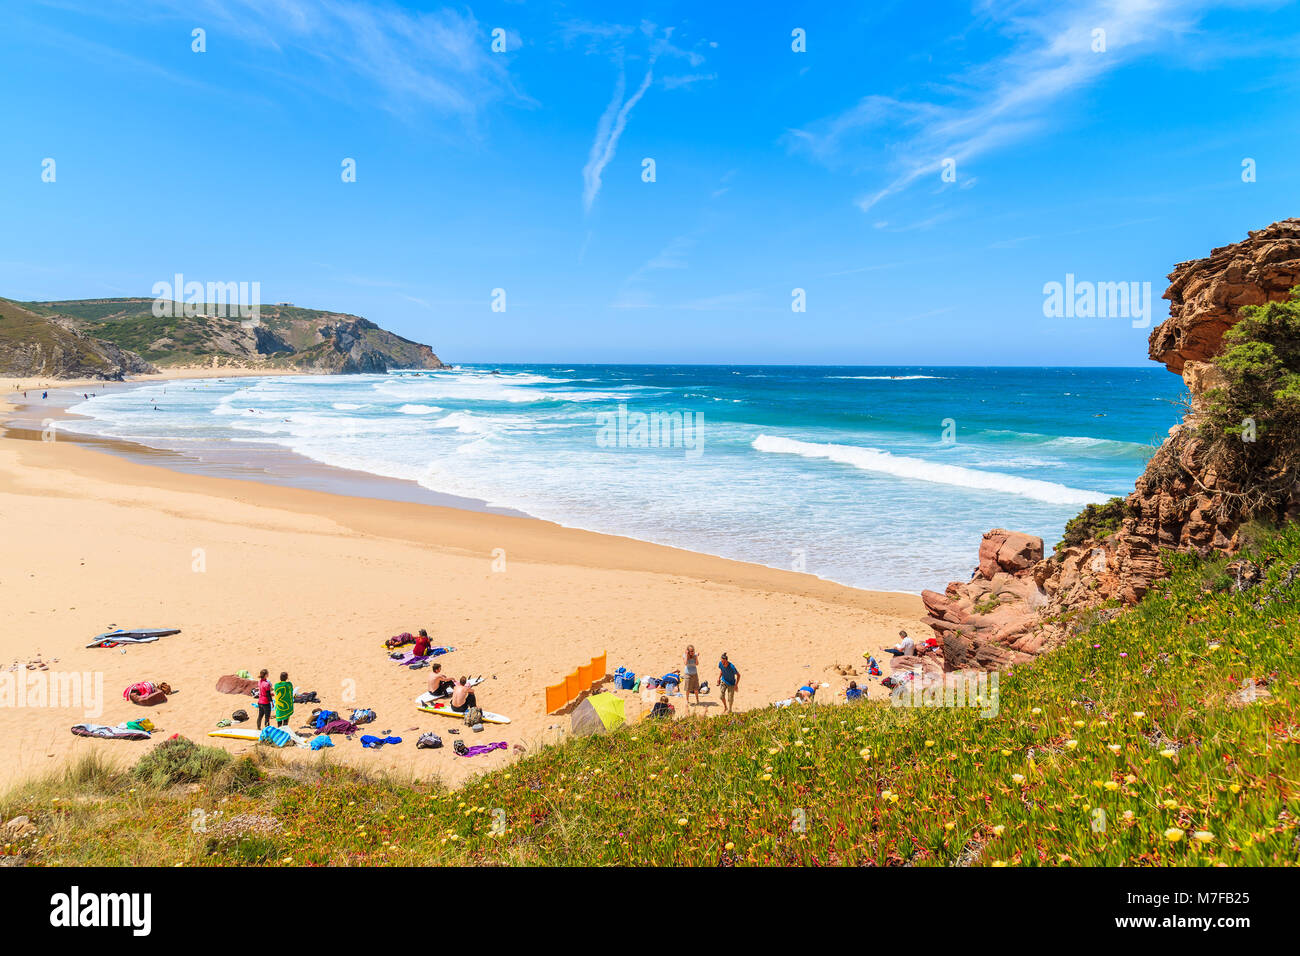 PRAIA DO AMADO STRAND, PORTUGAL - 15. MAI 2015: Surfer Entspannung am Sandstrand an sonnigen schönen Tag. Wassersportarten sind beliebte Aktivität in dieser Regio Stockfoto